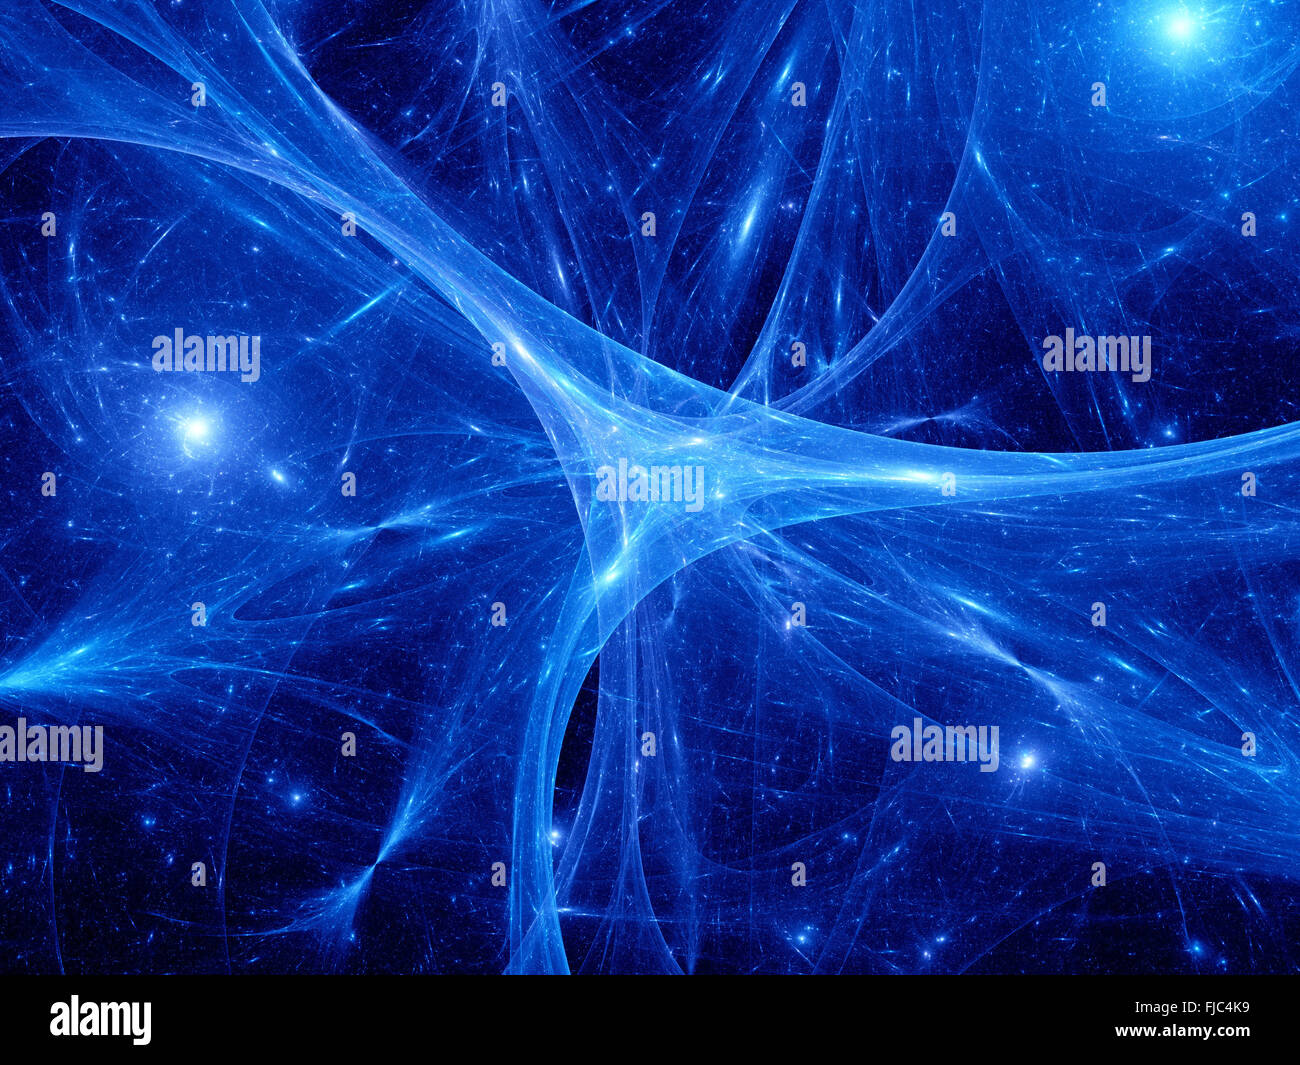 Leuchtende blaue Synapsen im Raum, Computer-generierte Zusammenfassung Hintergrund Stockfoto